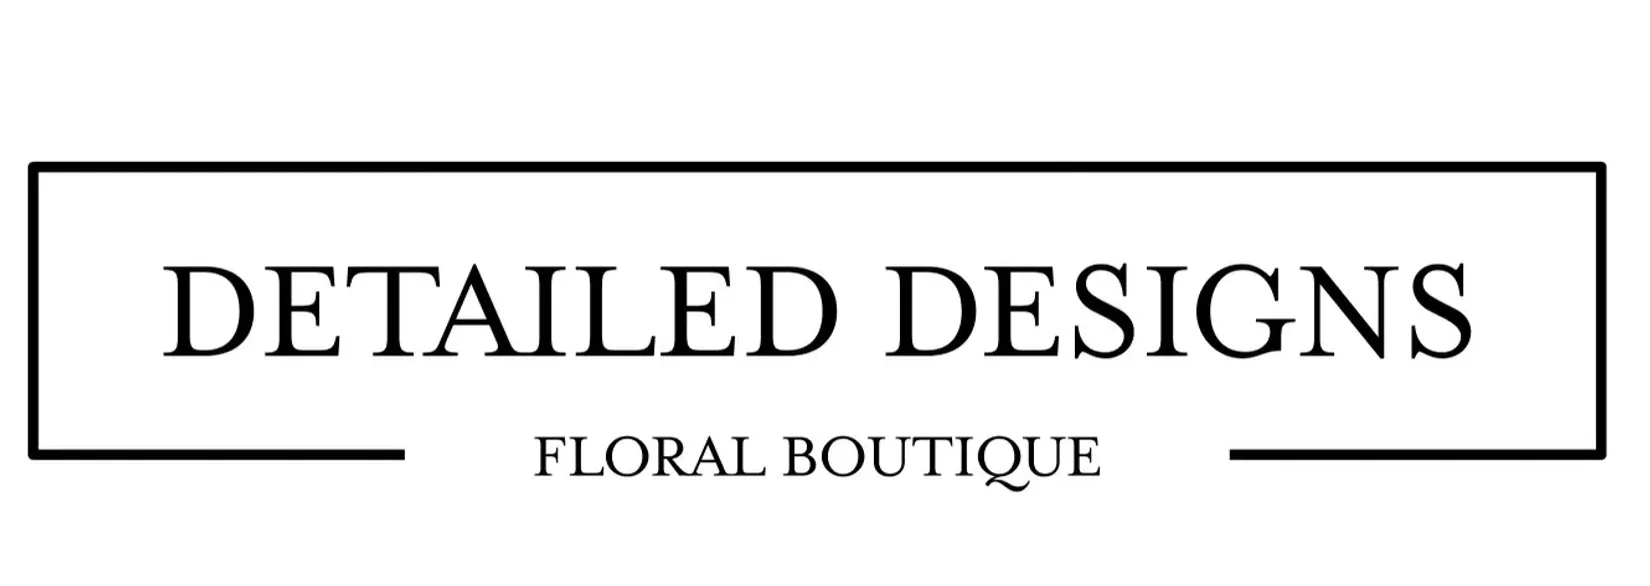 Detailed Designs Floral Boutique